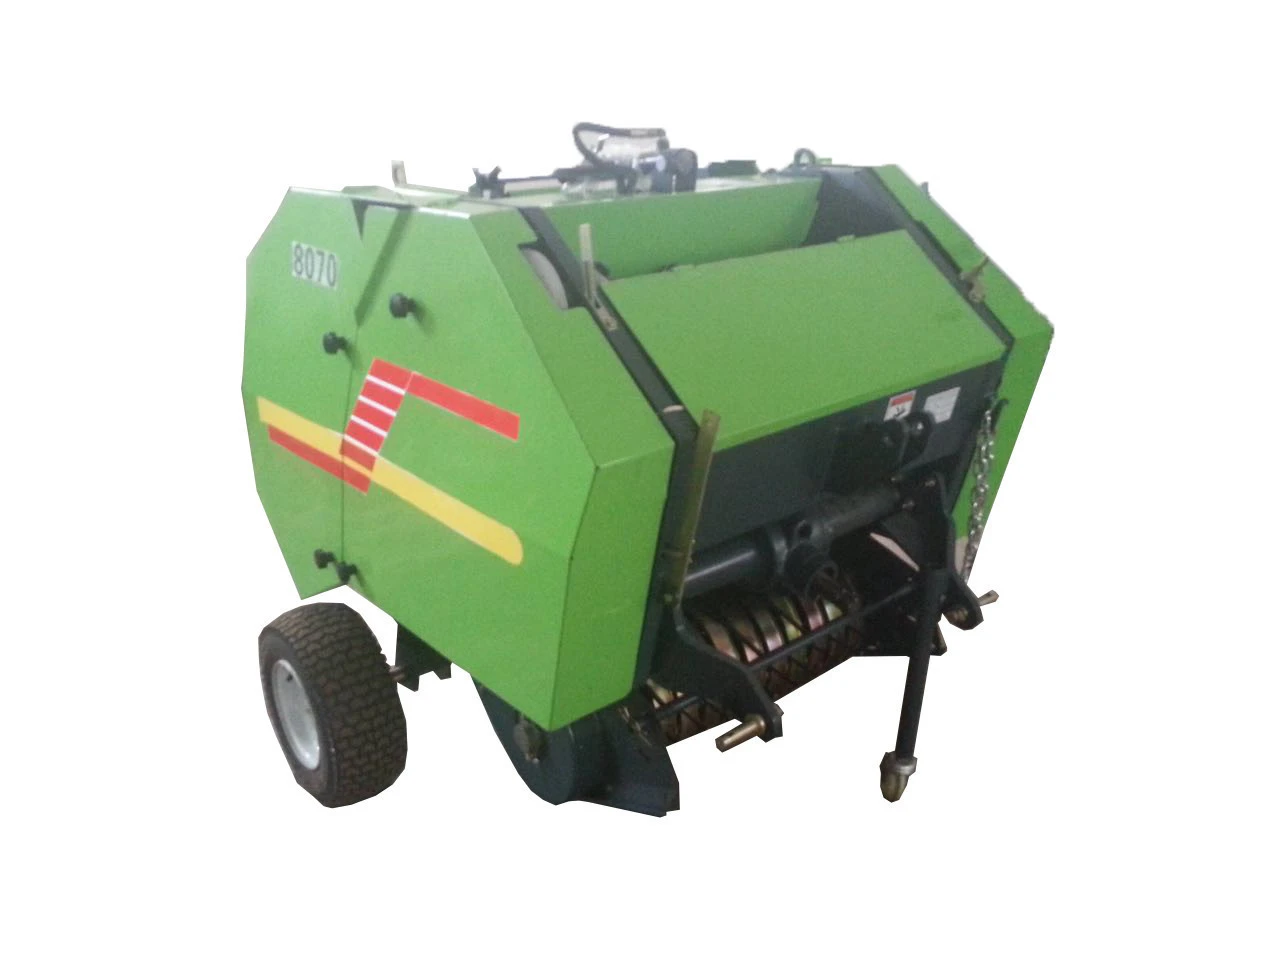 Tractor mounted PTO mini round hay straw baler machine